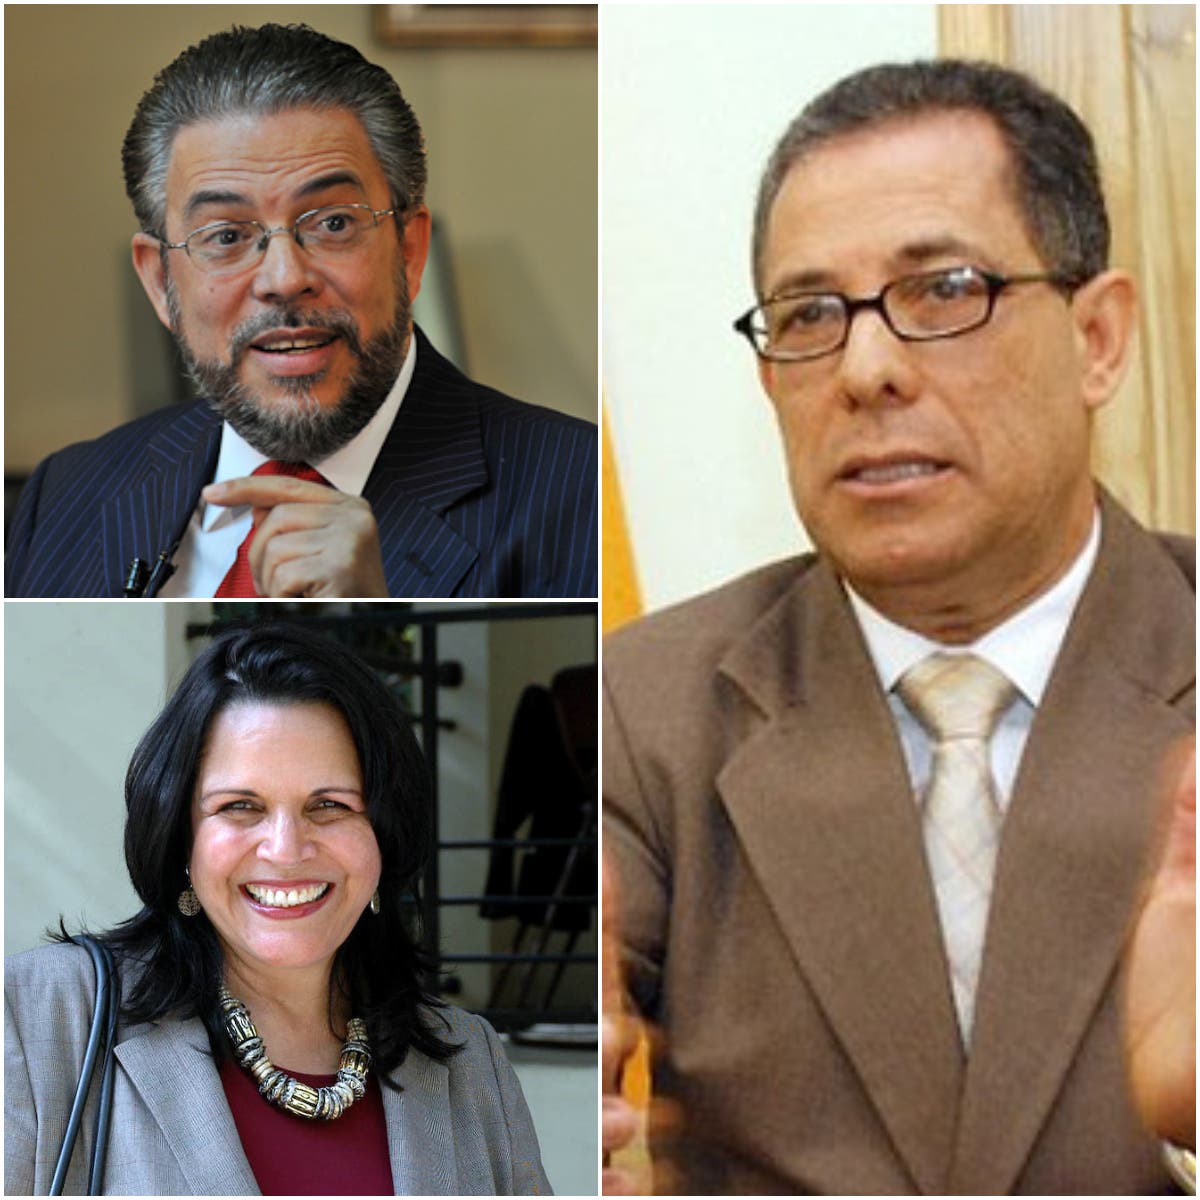 Dirigentes de la oposición califican propuesta de Danilo Medina como inconstitucional